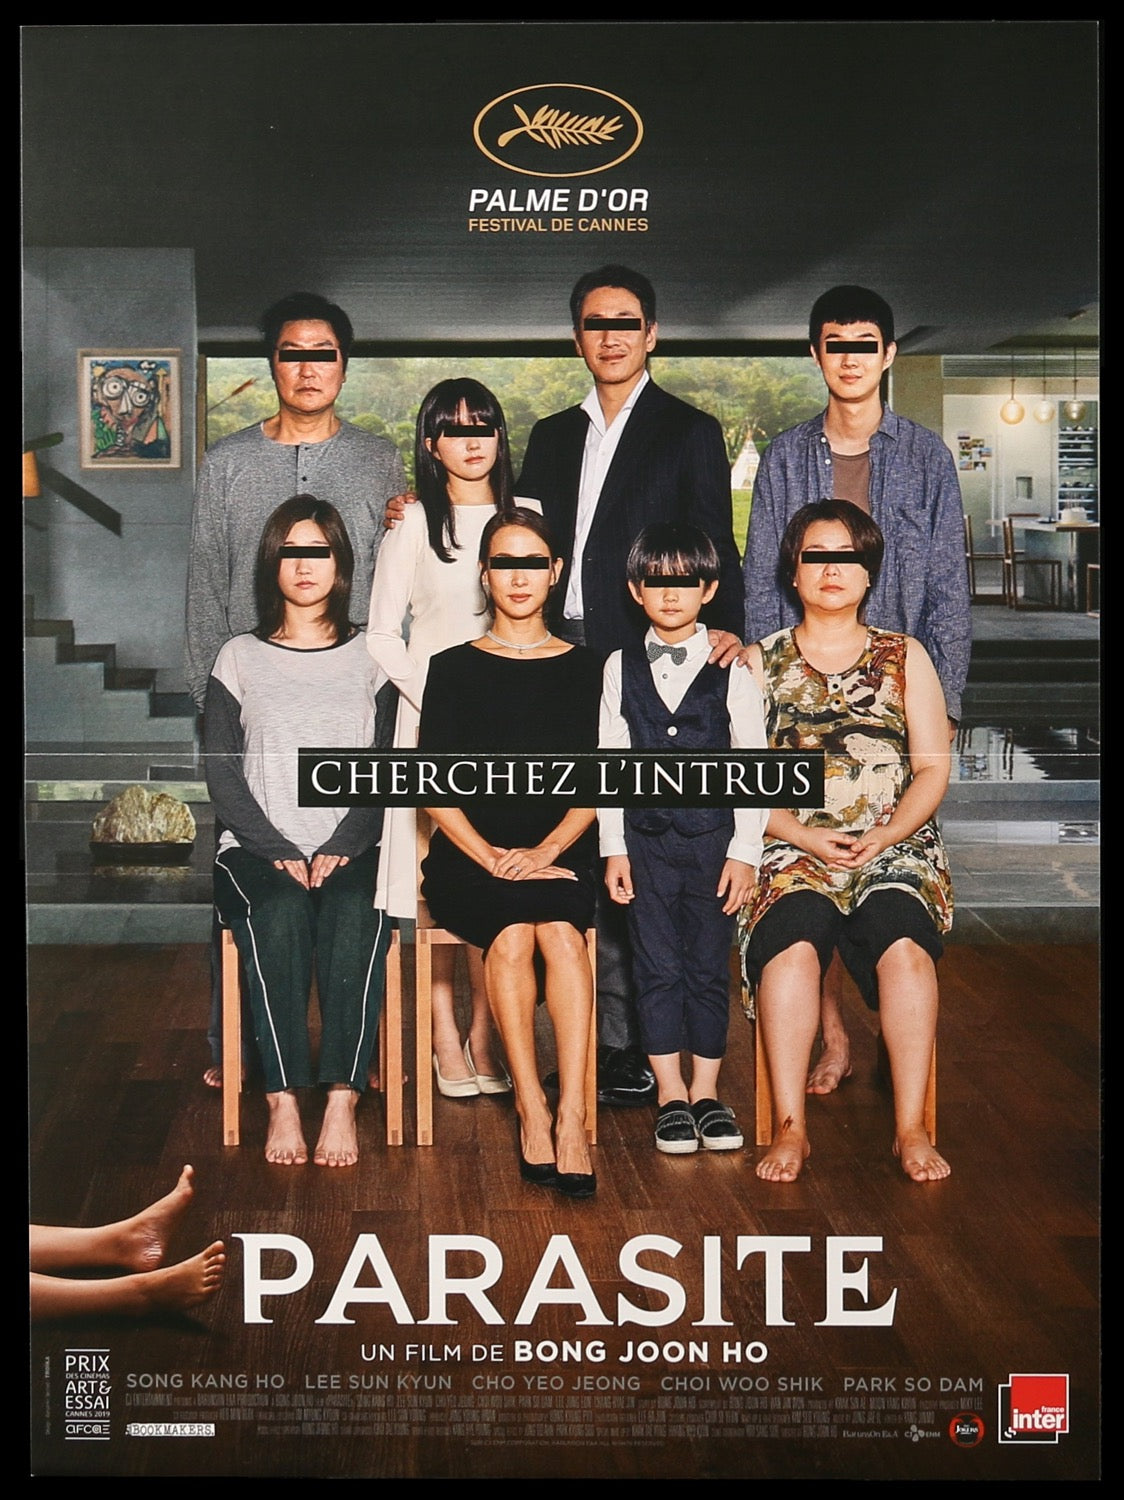 Parasite (2019) original movie poster for sale at Original Film Art